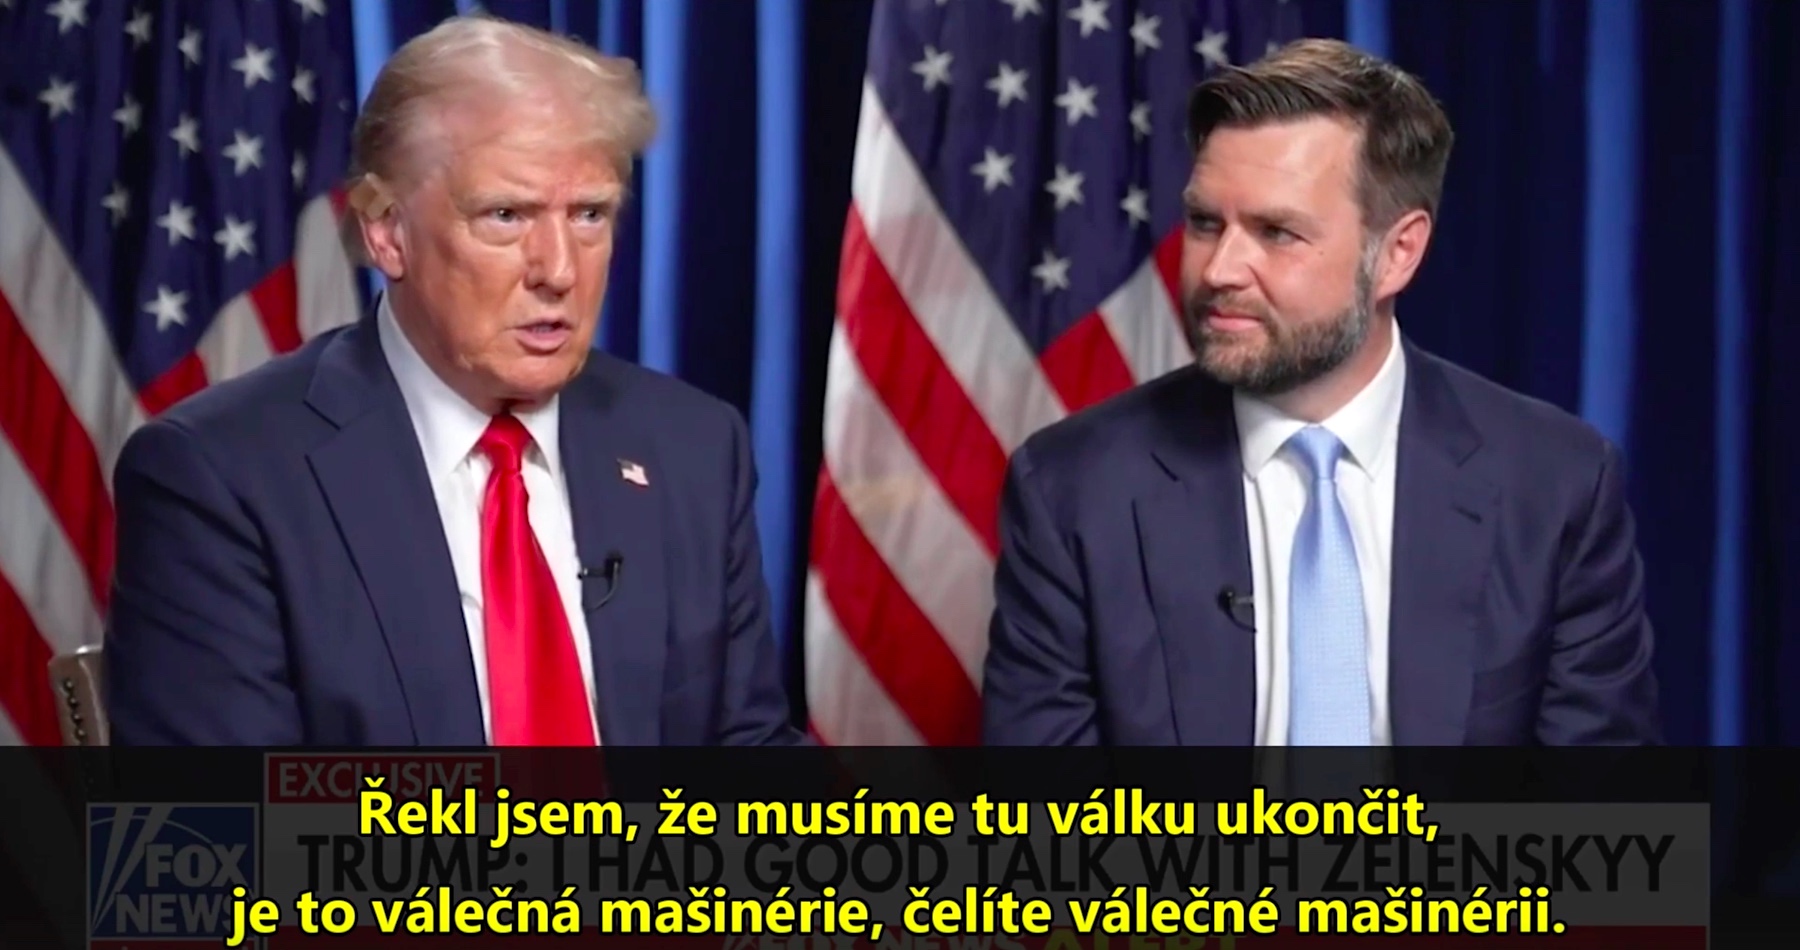 VIDEO: Donald Trump a JD Vance odhalili, co bylo předmětem telefonického rozhovoru se Zelenským. USA prý musí změnit směr a kurz své politiky a válka na Ukrajině musí okamžitě skončit